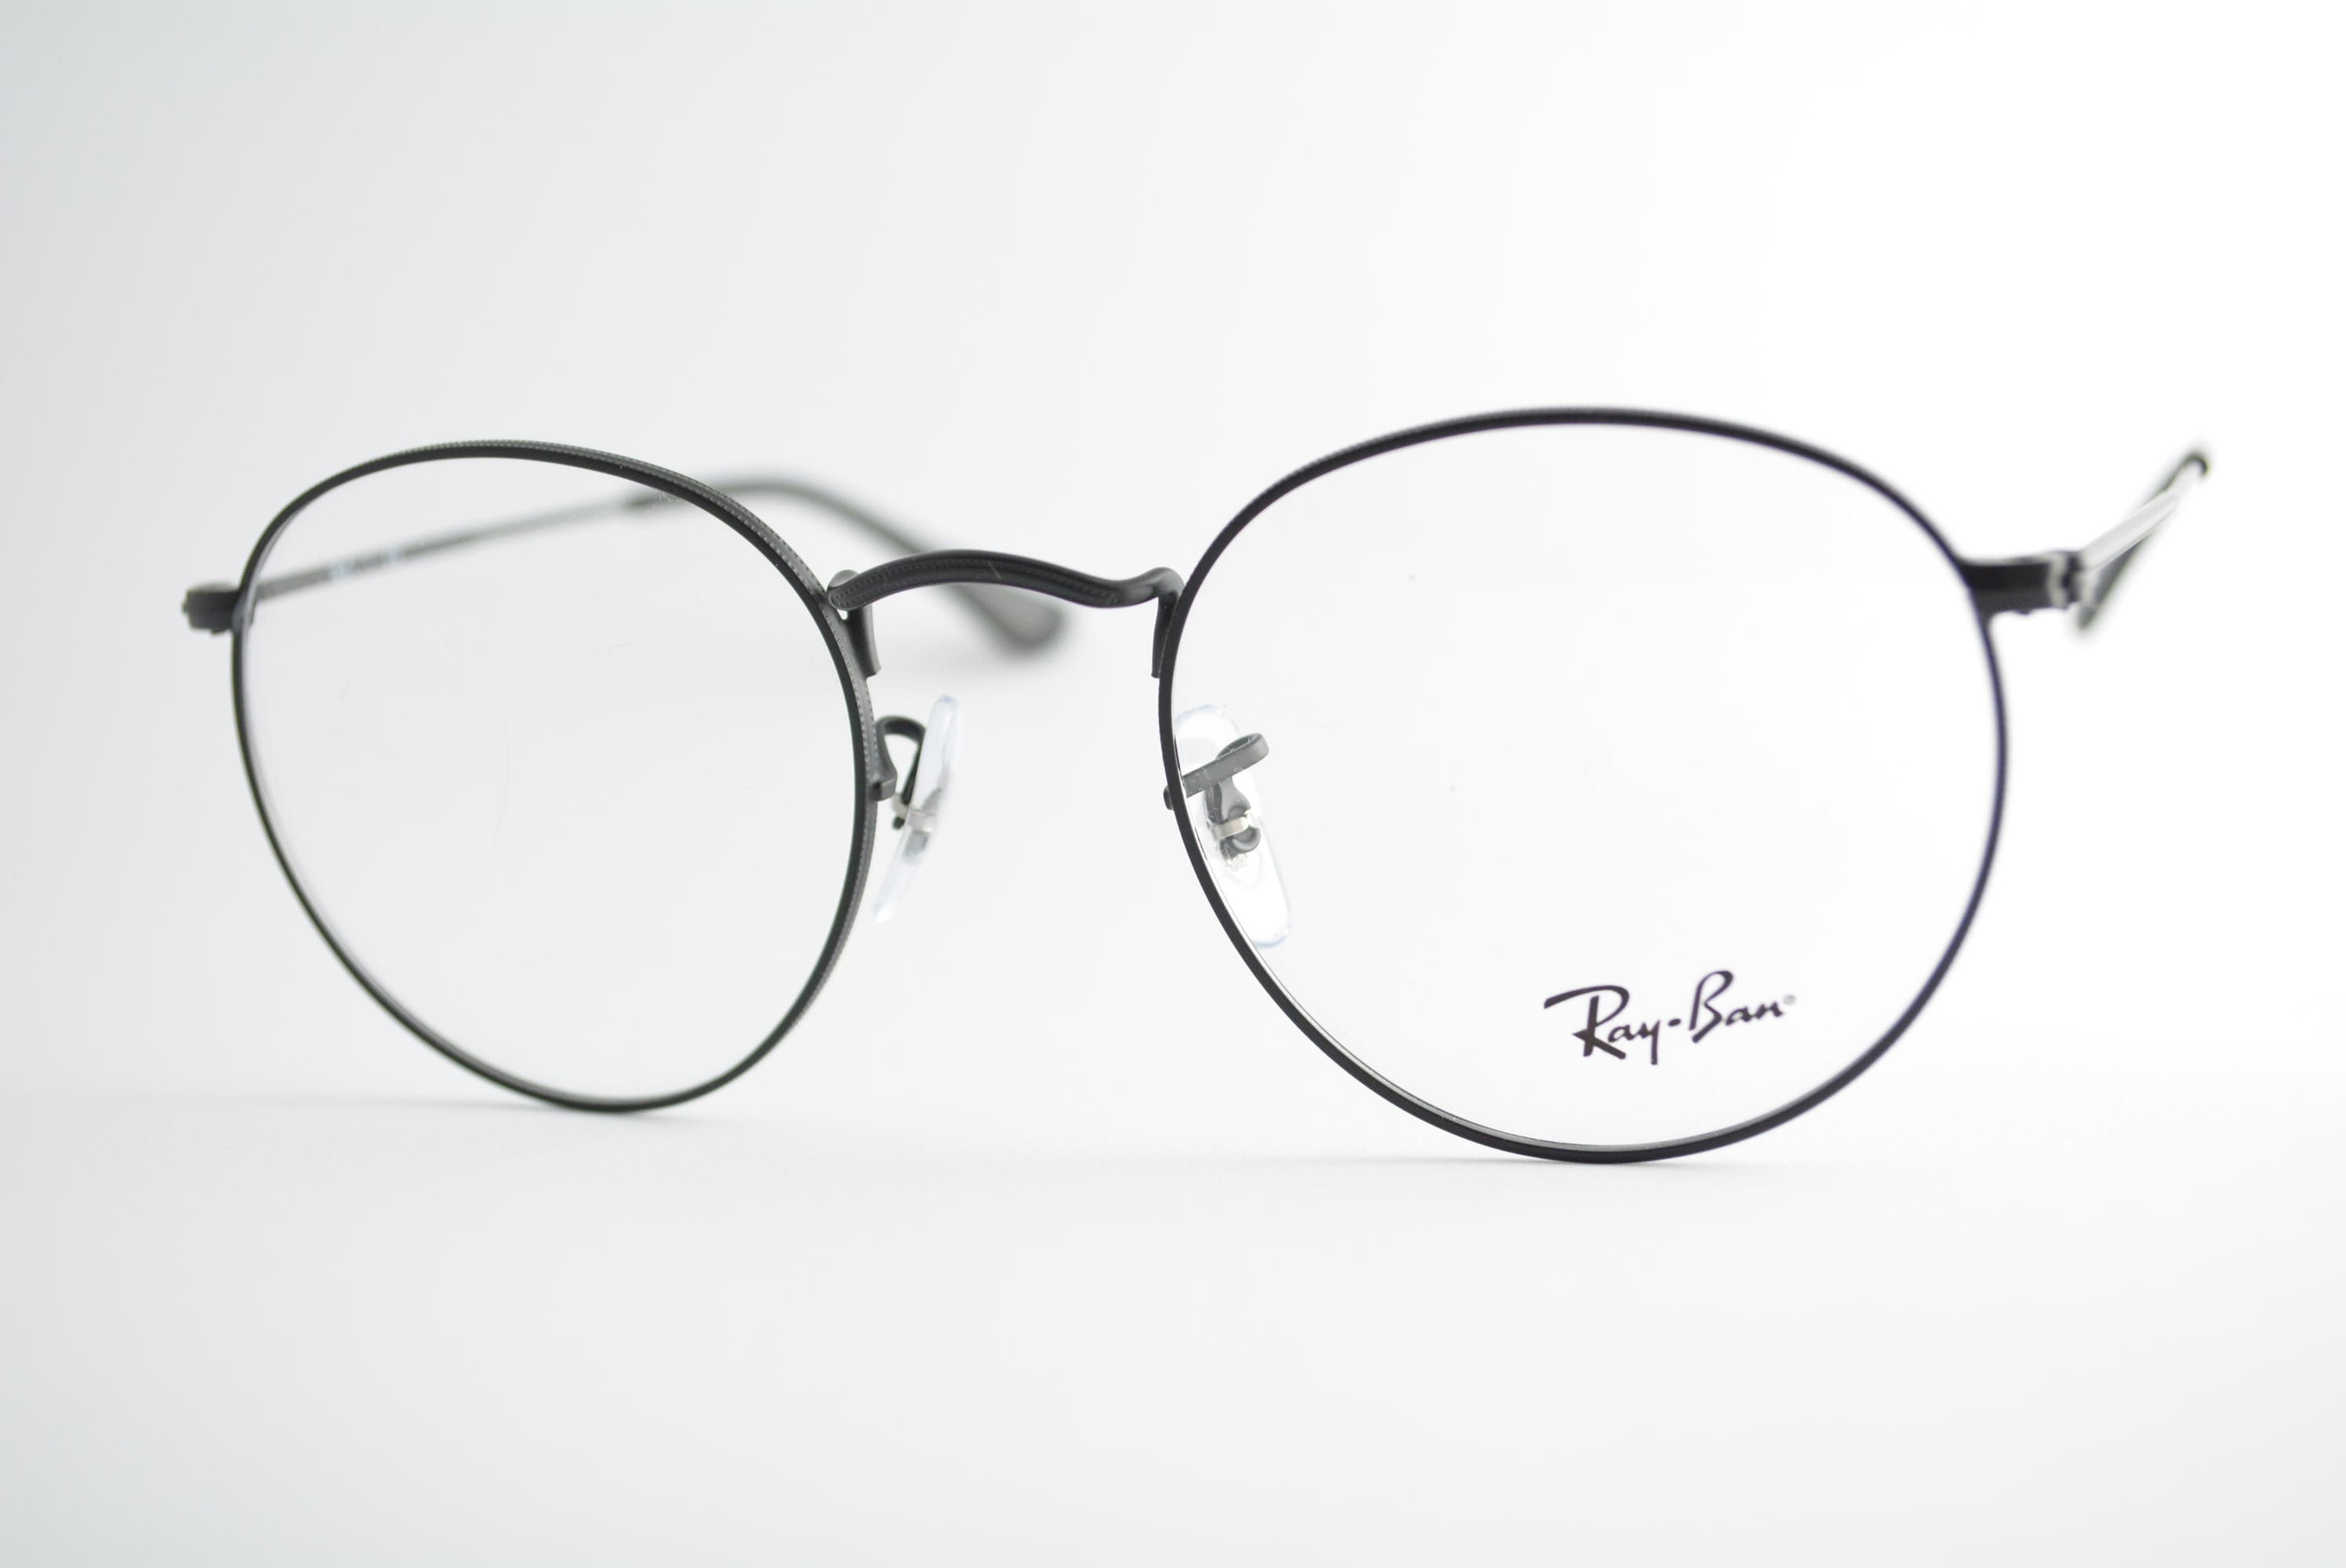 armação de óculos Ray Ban mod rb3447v 2503